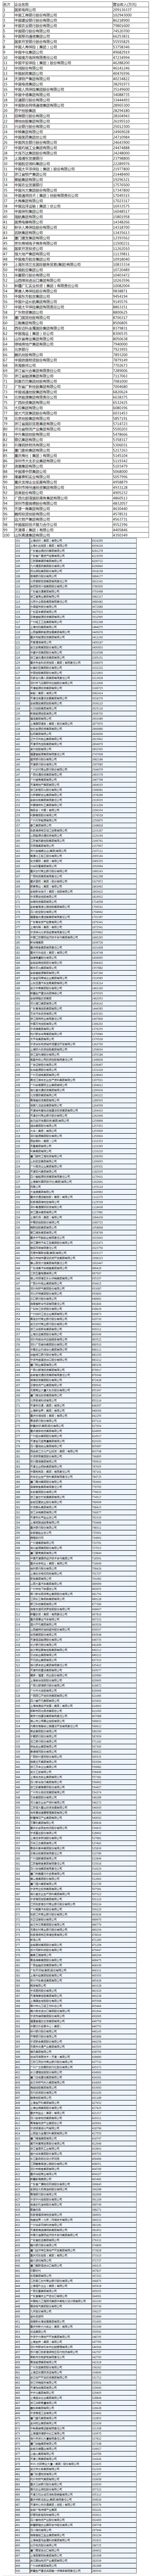 2015中国服务业500强.jpg